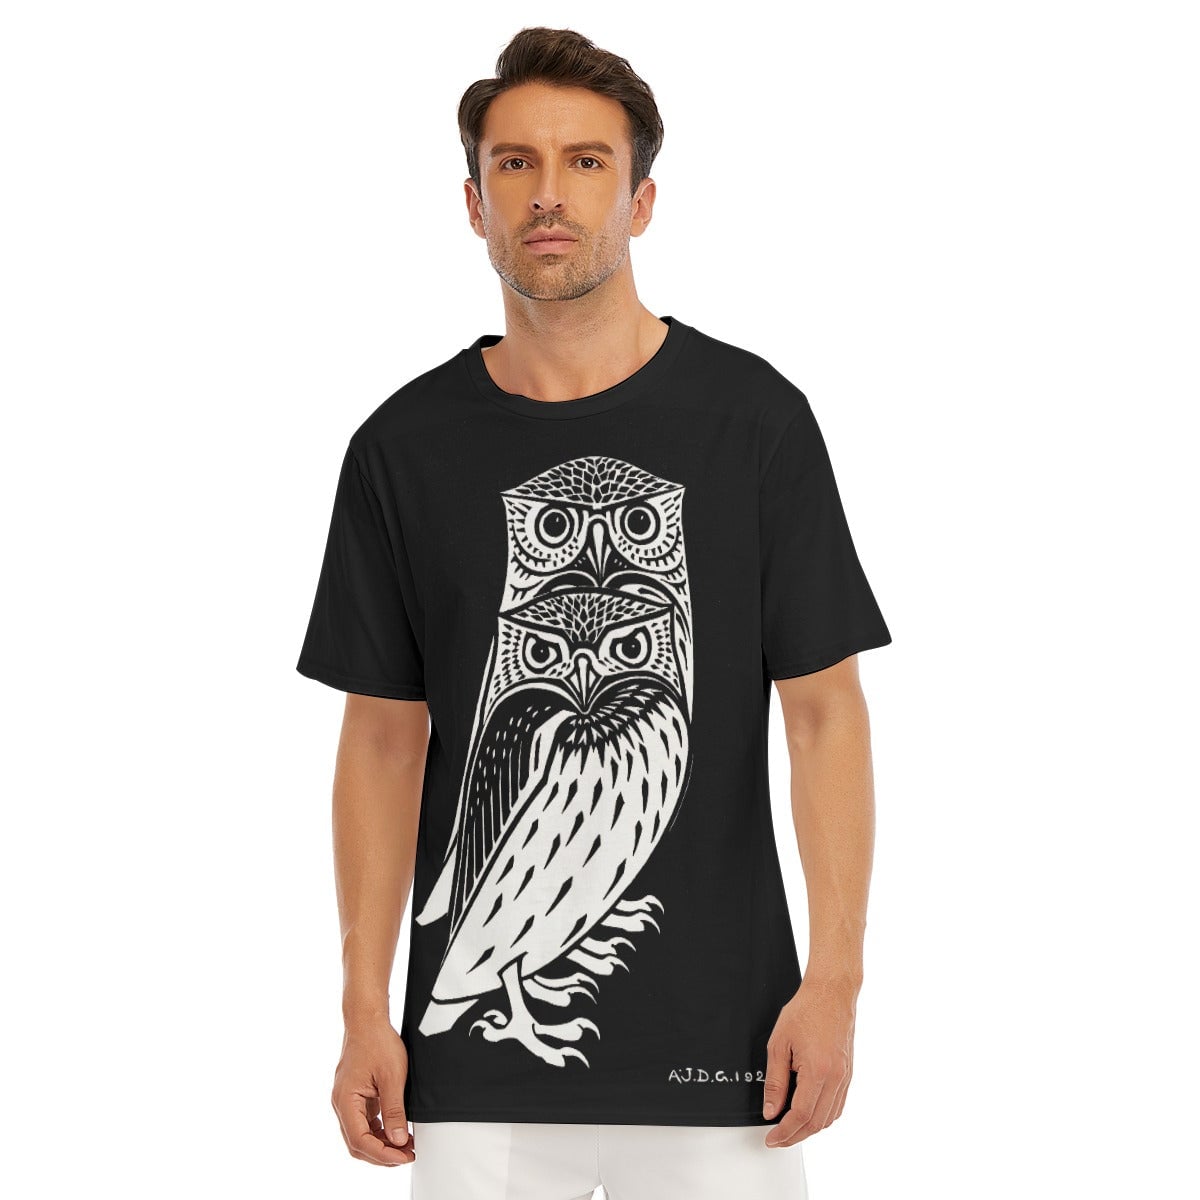 Two Owls by Julie de Graag T-Shirt